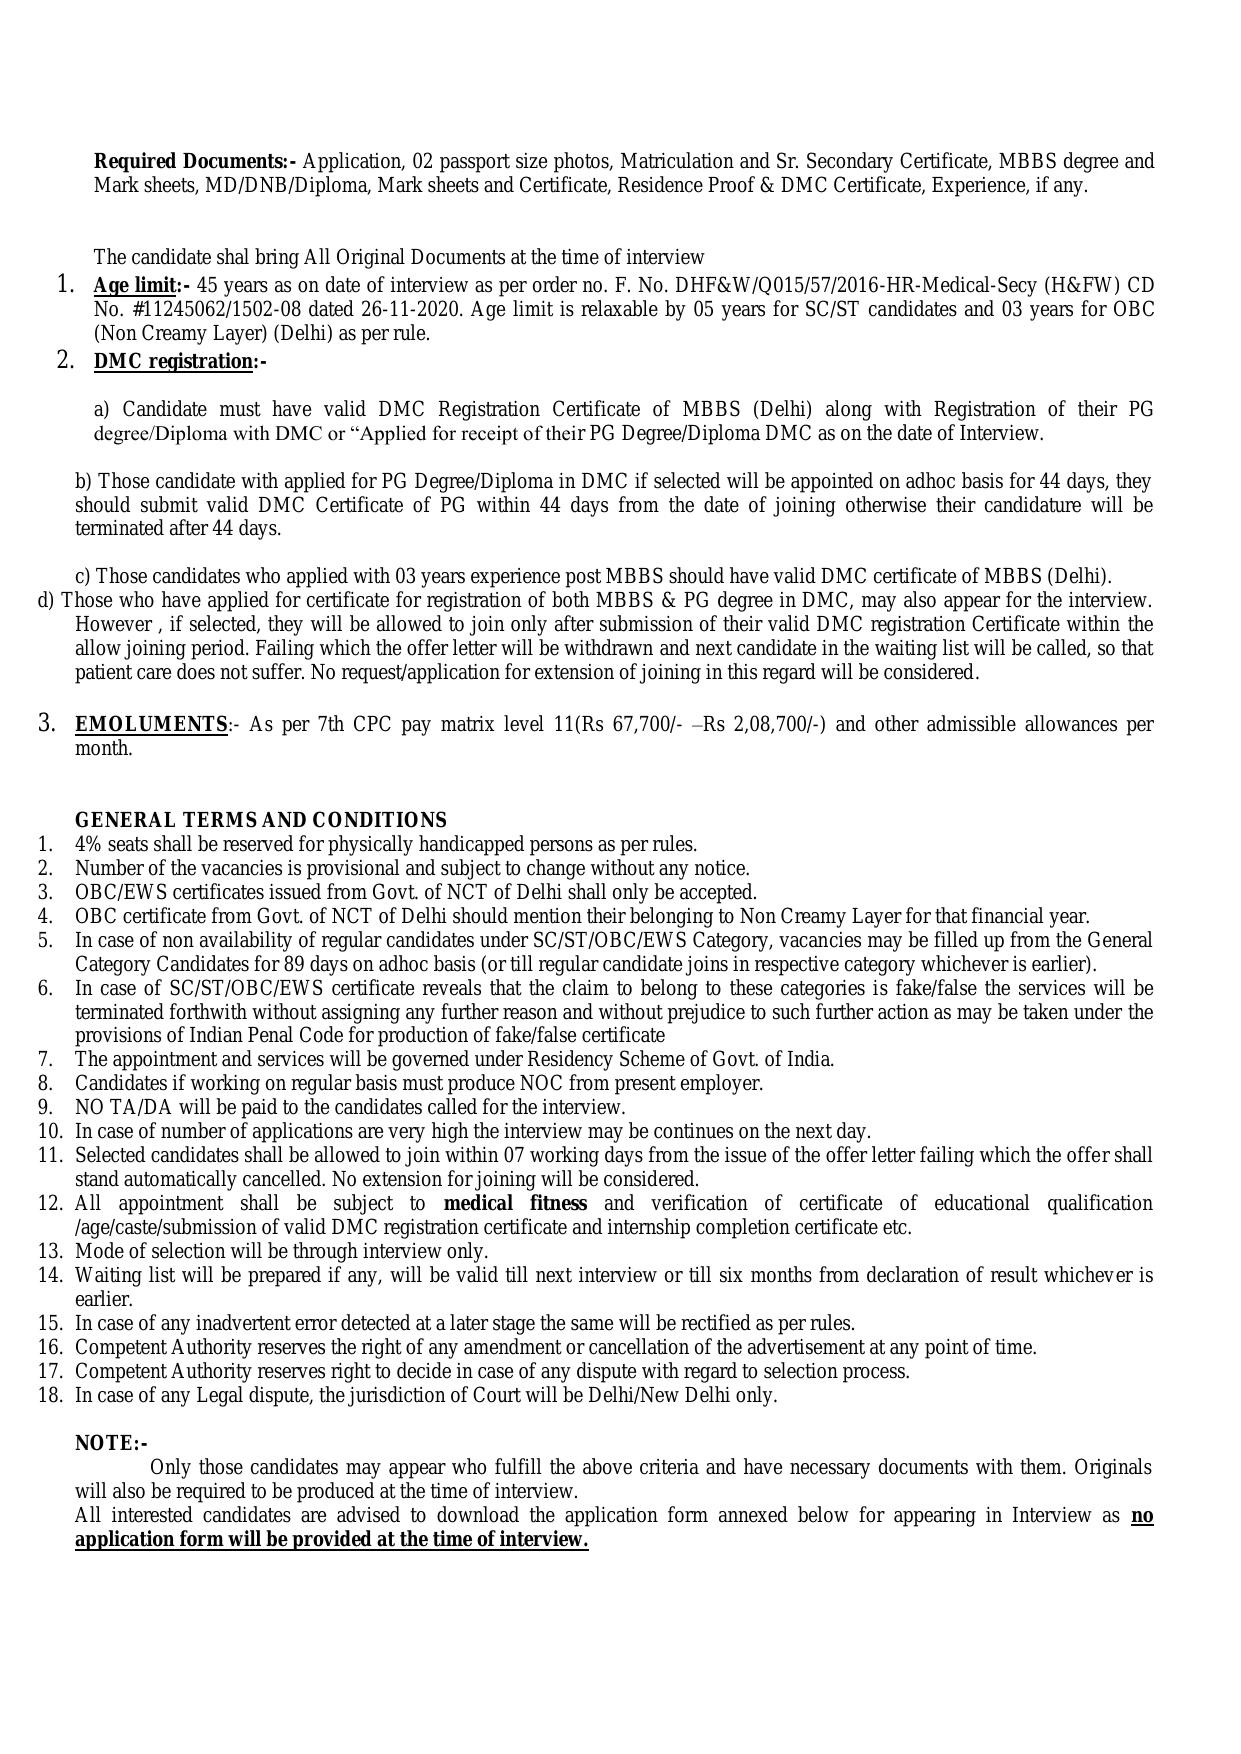 DDUH Recruitment: for Senior Resident - 52 Posts - Page 2